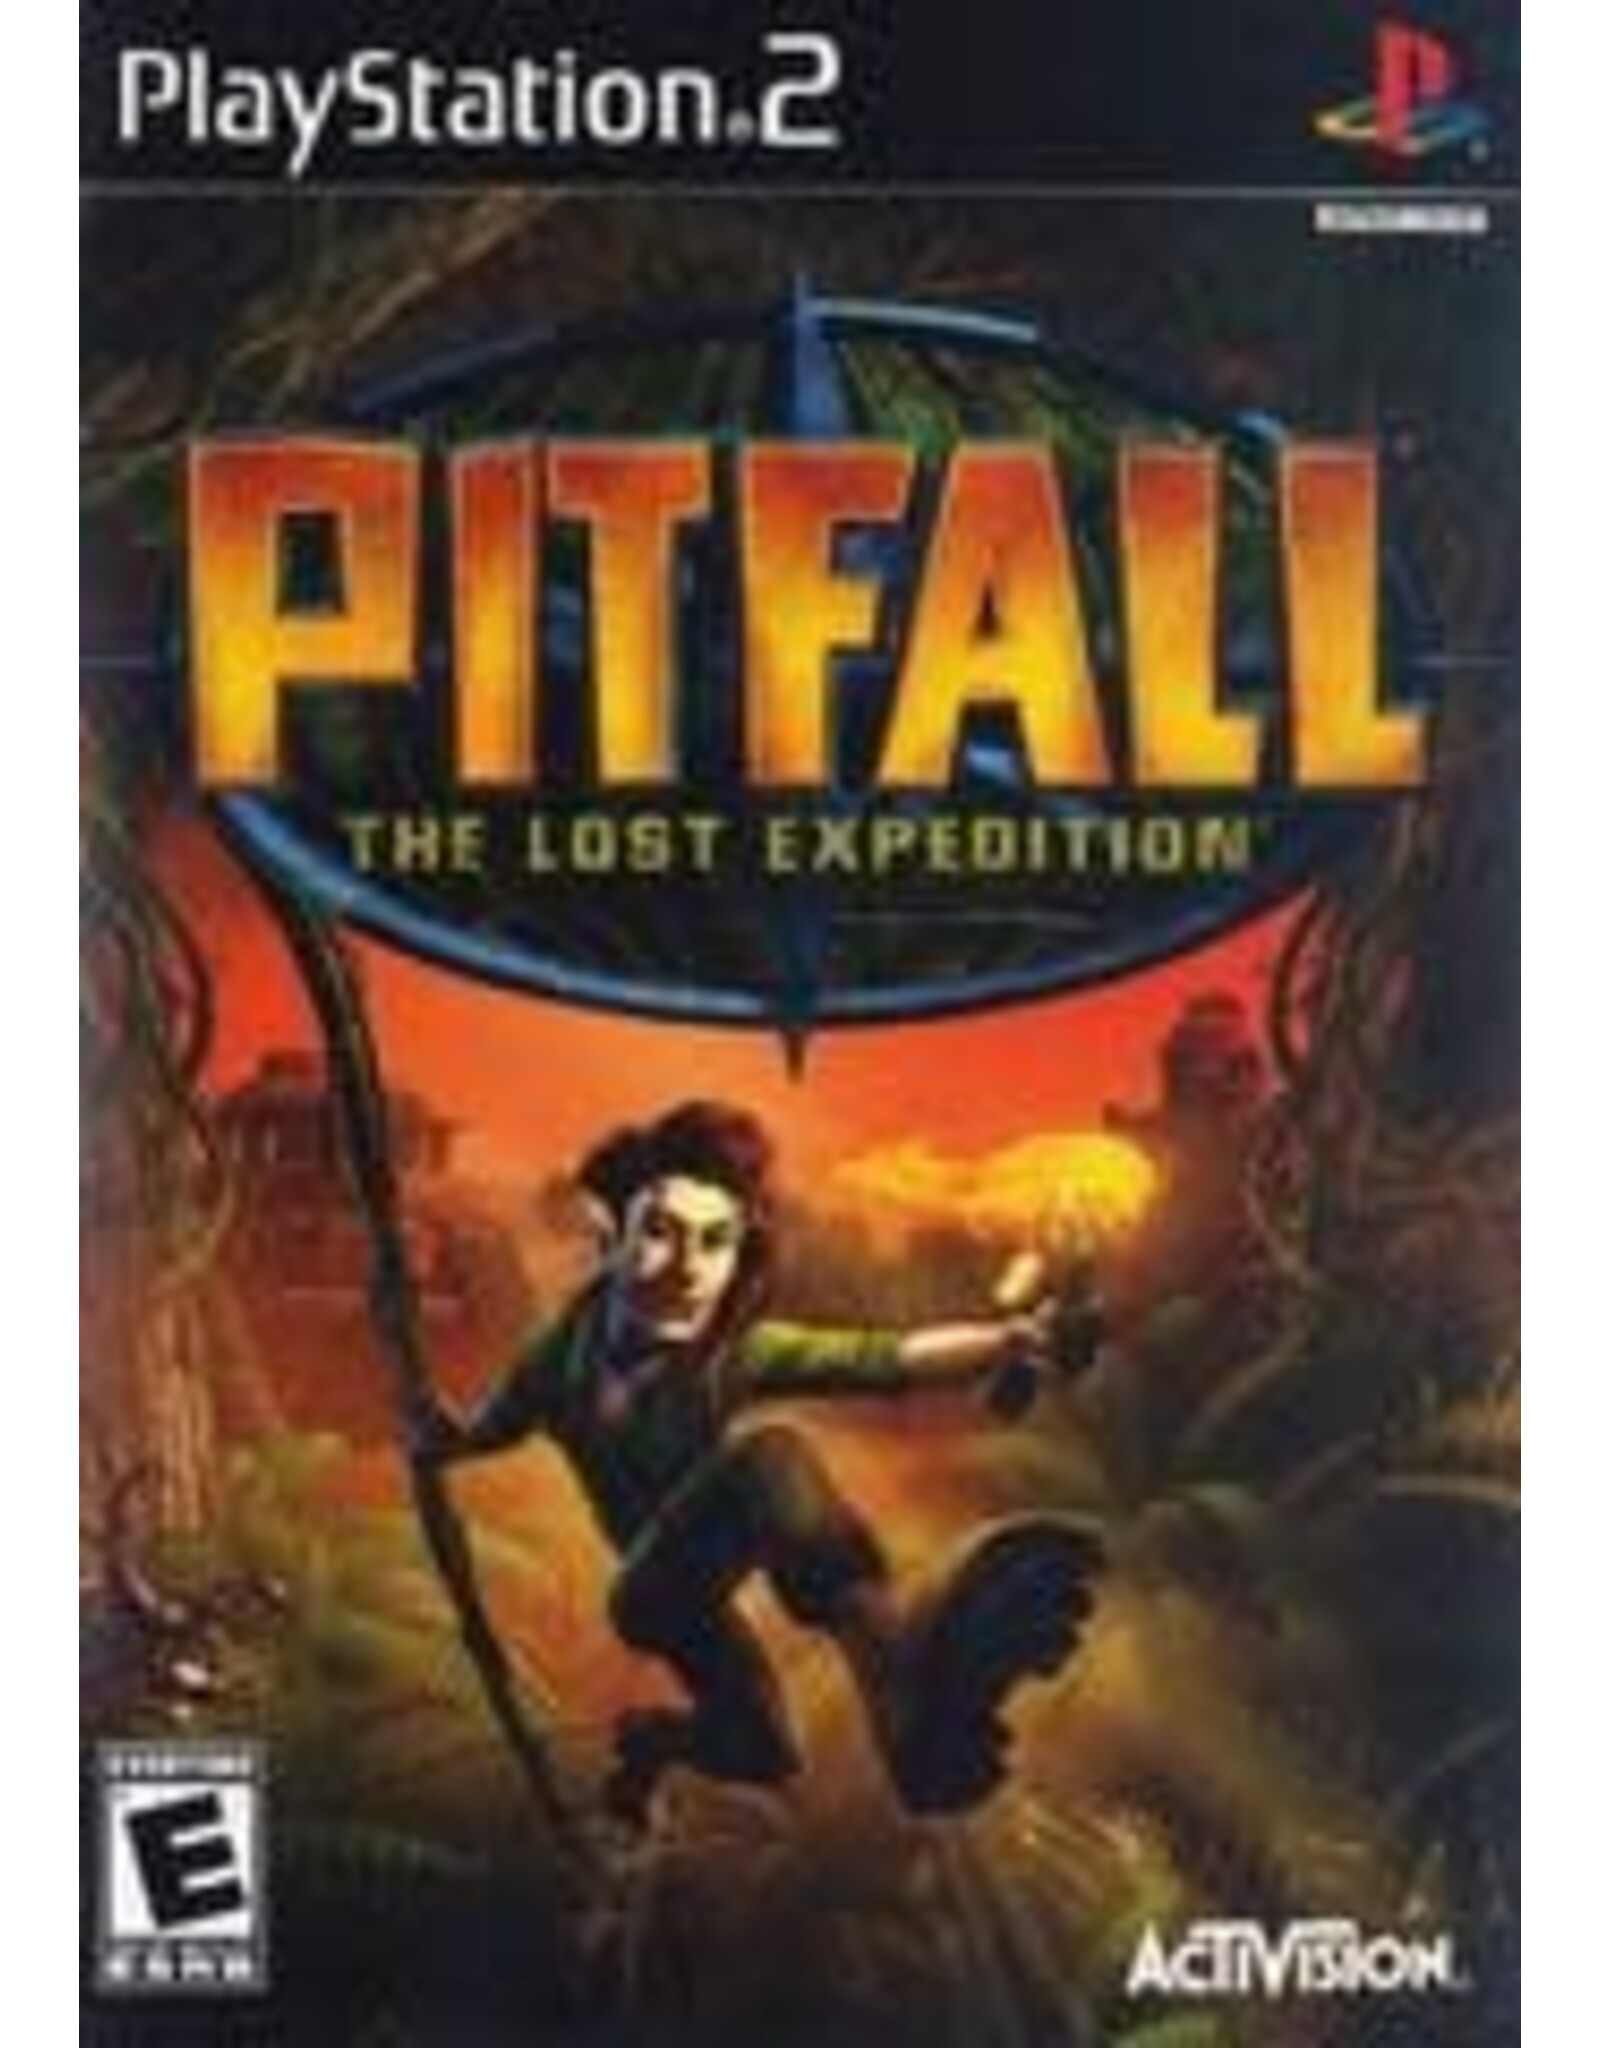 Playstation 2 Pitfall The Lost Expedition (CiB)